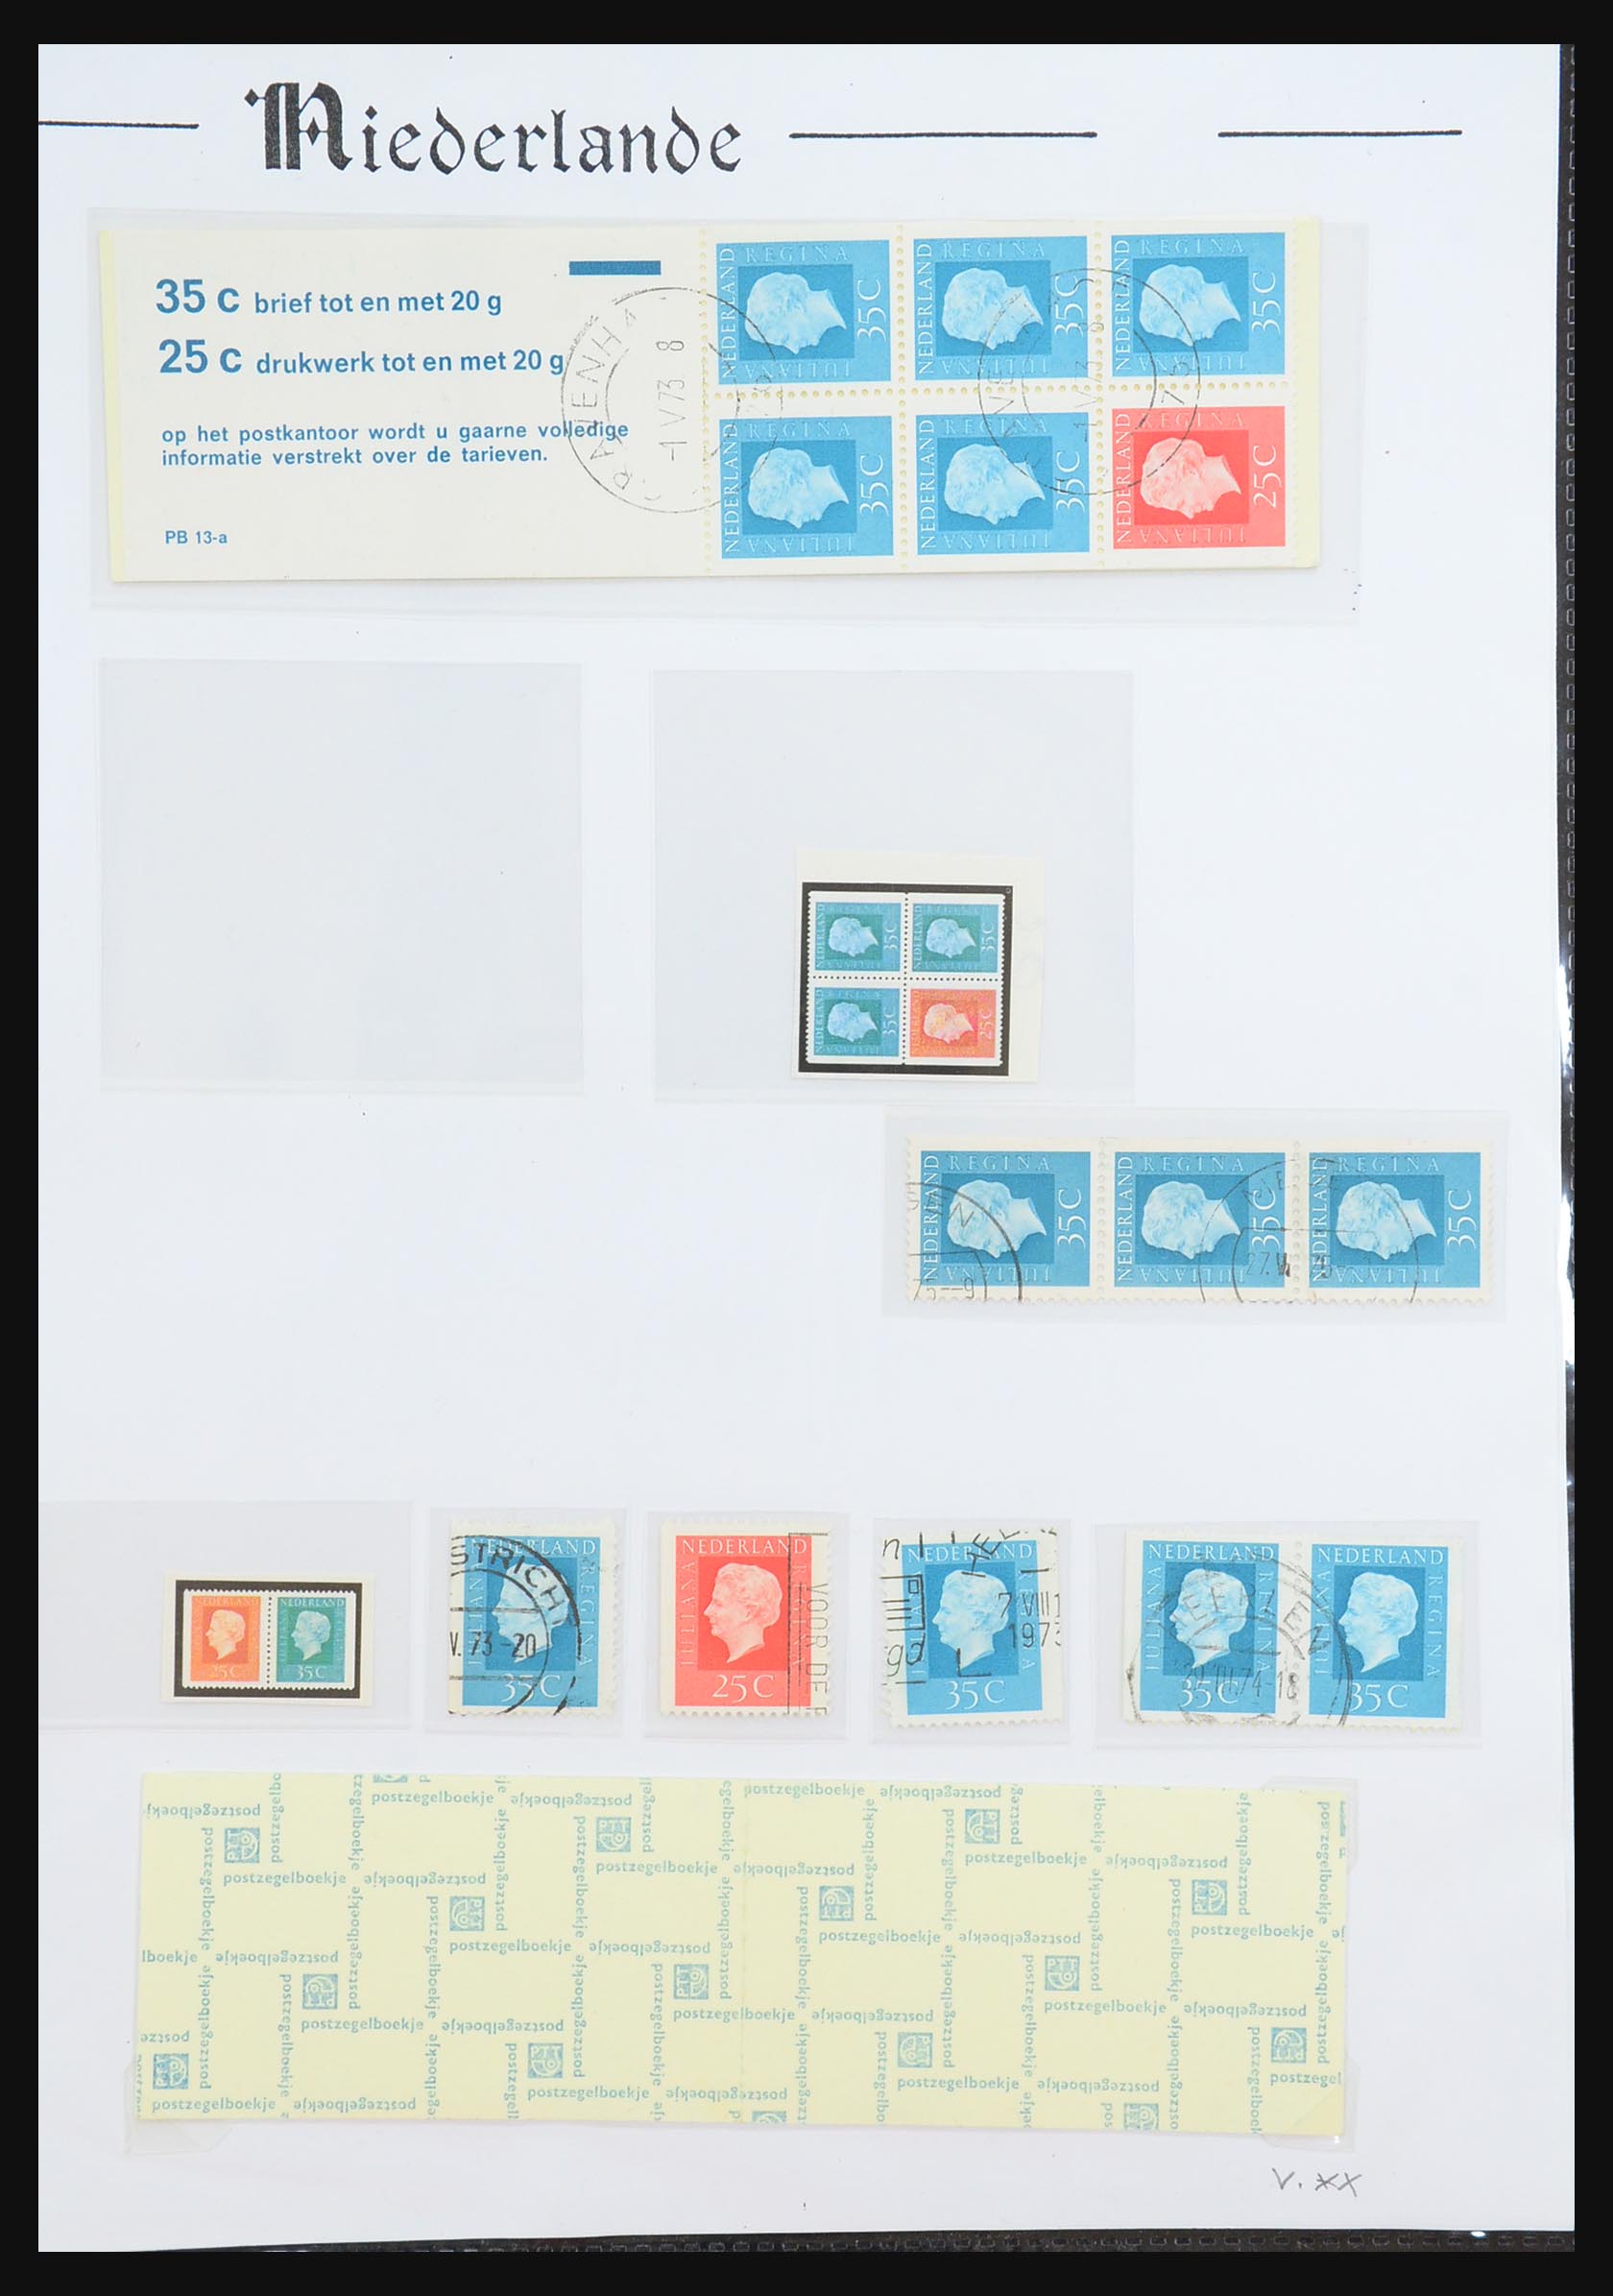 31311 052 - 31311 Netherlands stamp booklets 1964-1994.